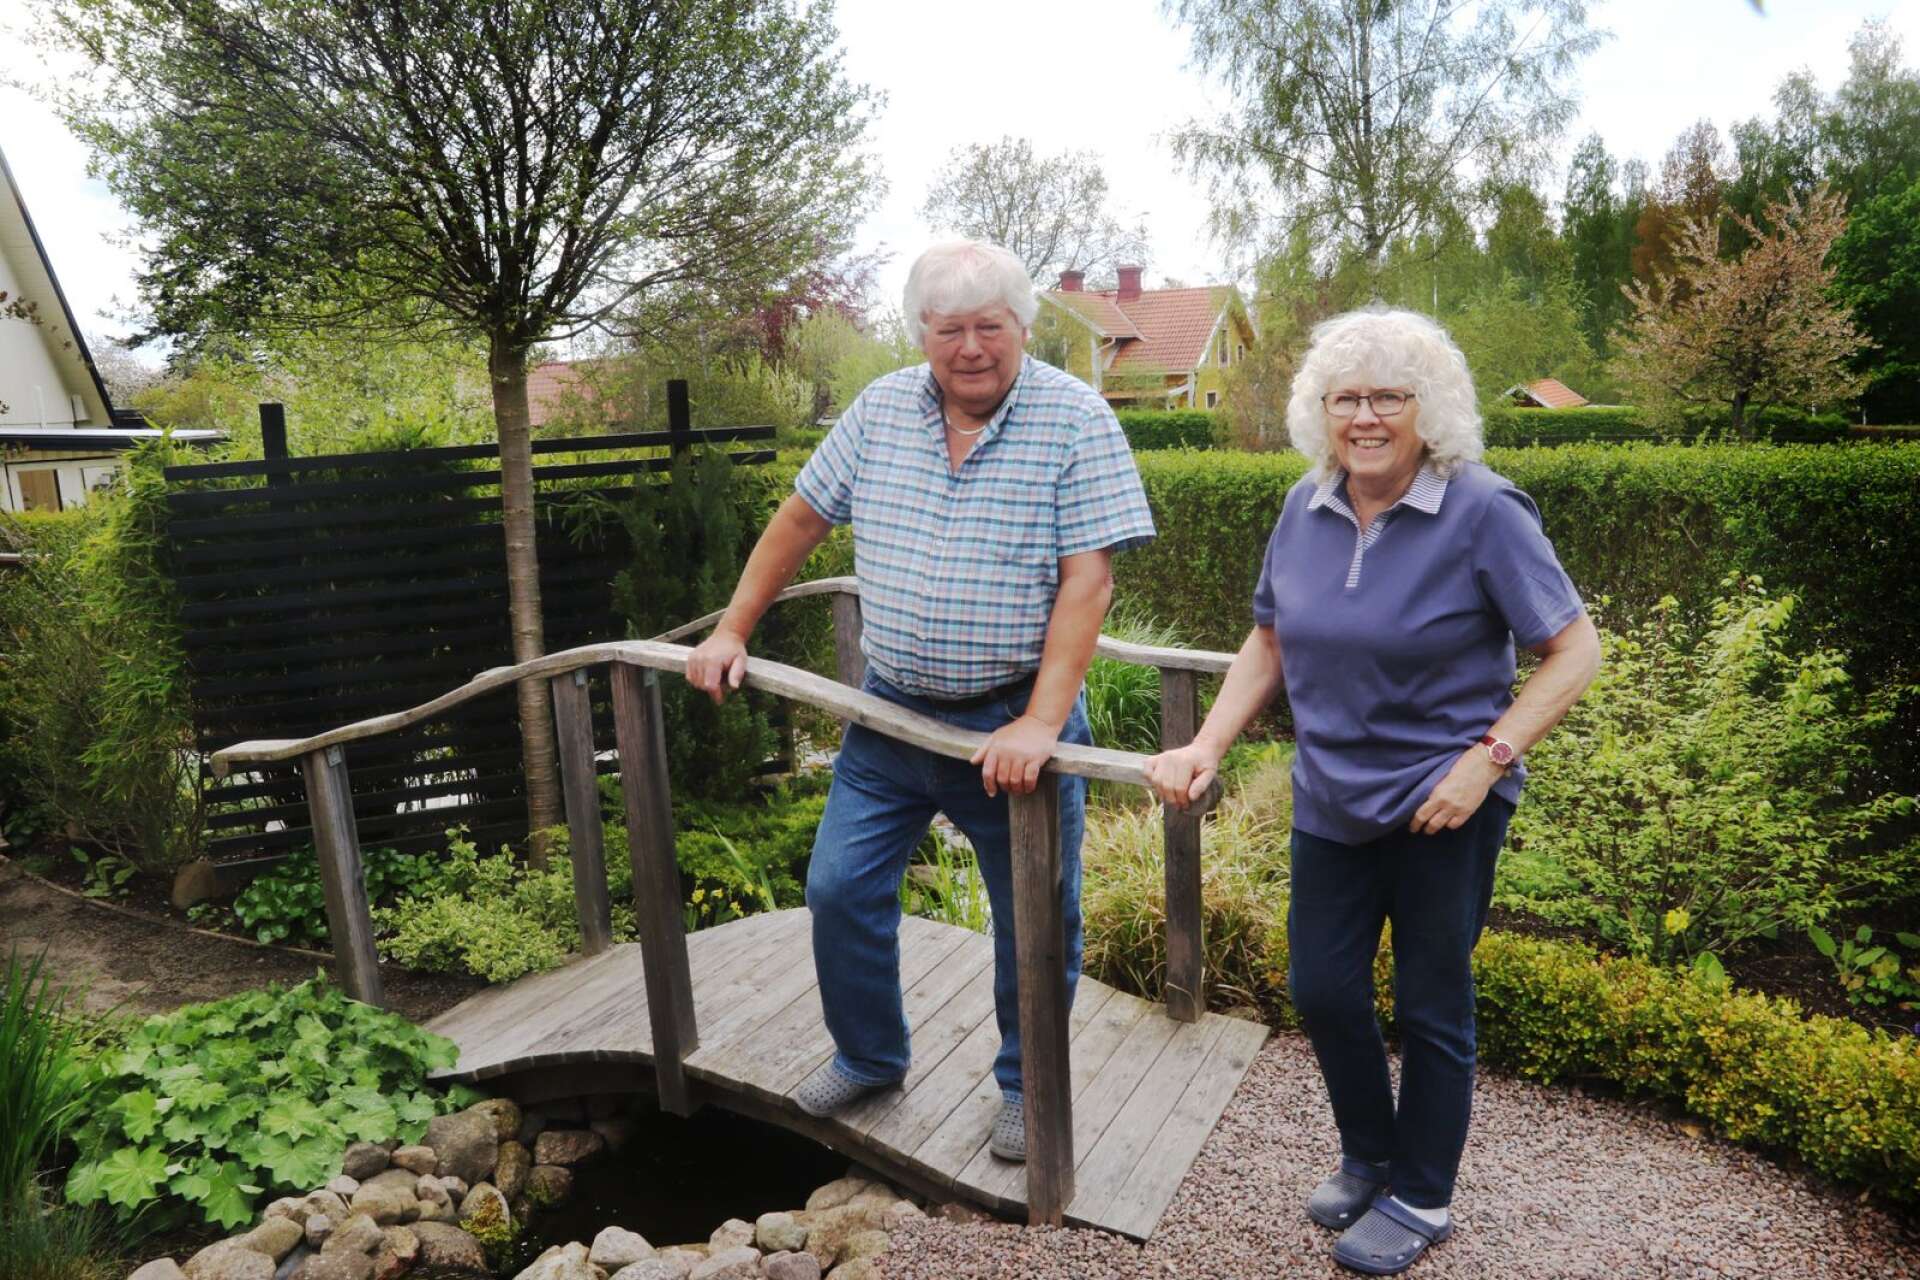 I Ulf och Marianne Weibulls trädgård går det att hitta allt från broar till stengångar, odlingsbäddar och dammar. Den 6 juni hoppas paret kunna inspirera andra trädgårdsfantaster när de öppnar upp för projektet ”Mötesplats trädgård”.